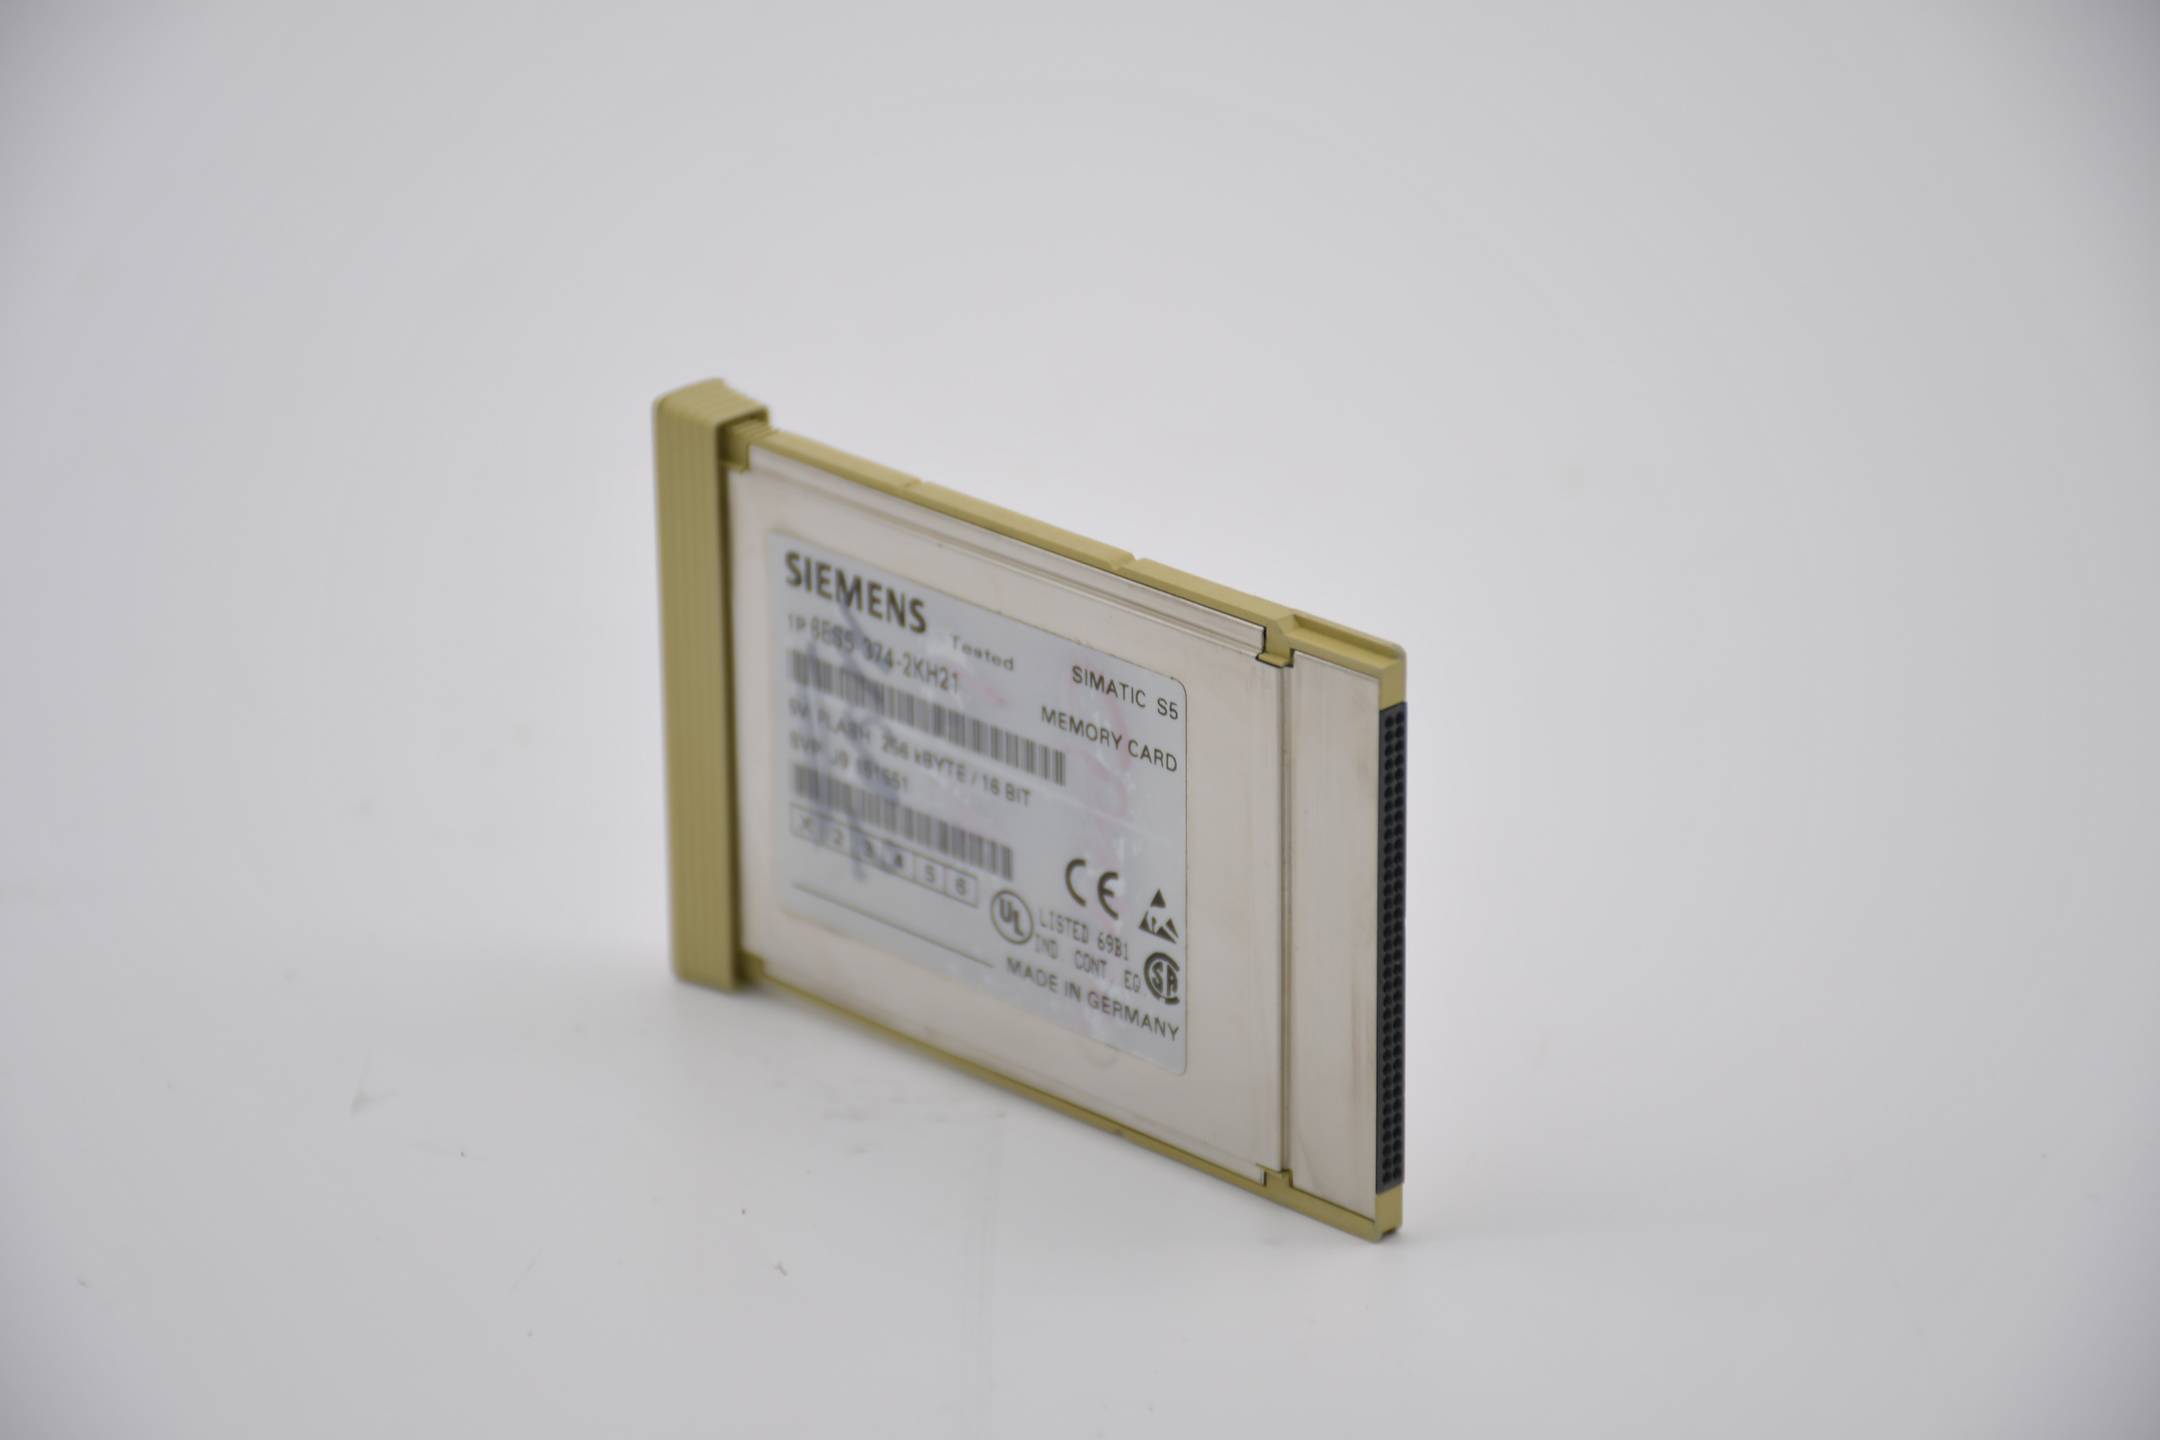 Siemens simatic S5 Memory Card 256kB 6ES5374-2KH21 ( 6ES5 374-2KH21 )